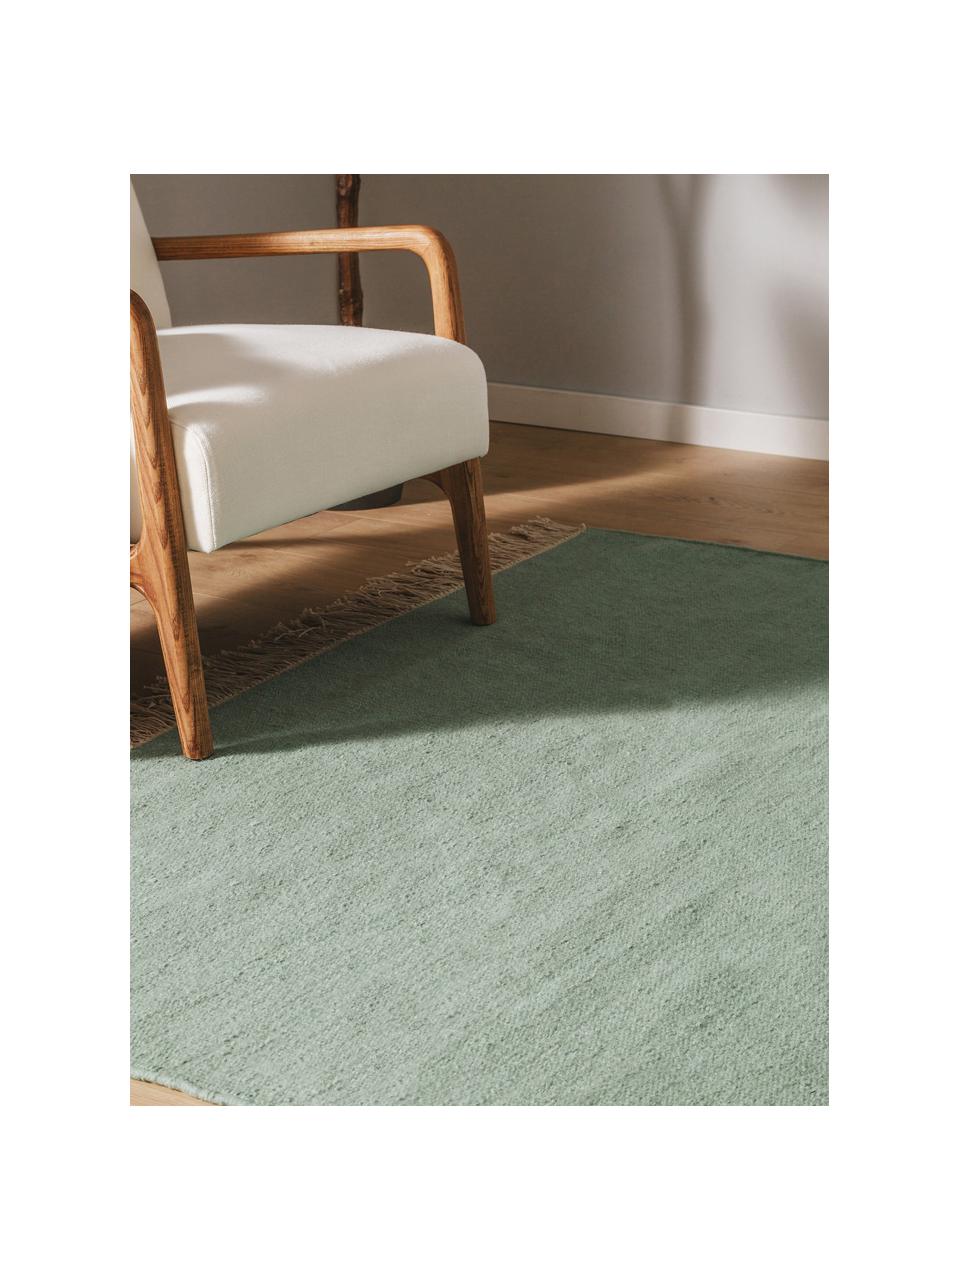 Ručne tkaný vlnený koberec so strapcami Liv, 80 % vlna, 20 %  polyester

V prvých týždňoch používania môžu vlnené koberce uvoľňovať vlákna, tento jav zmizne po niekoľkých týždňoch používania, Šalviovozelená, Š 80 x D 150 cm (veľkosť XS)